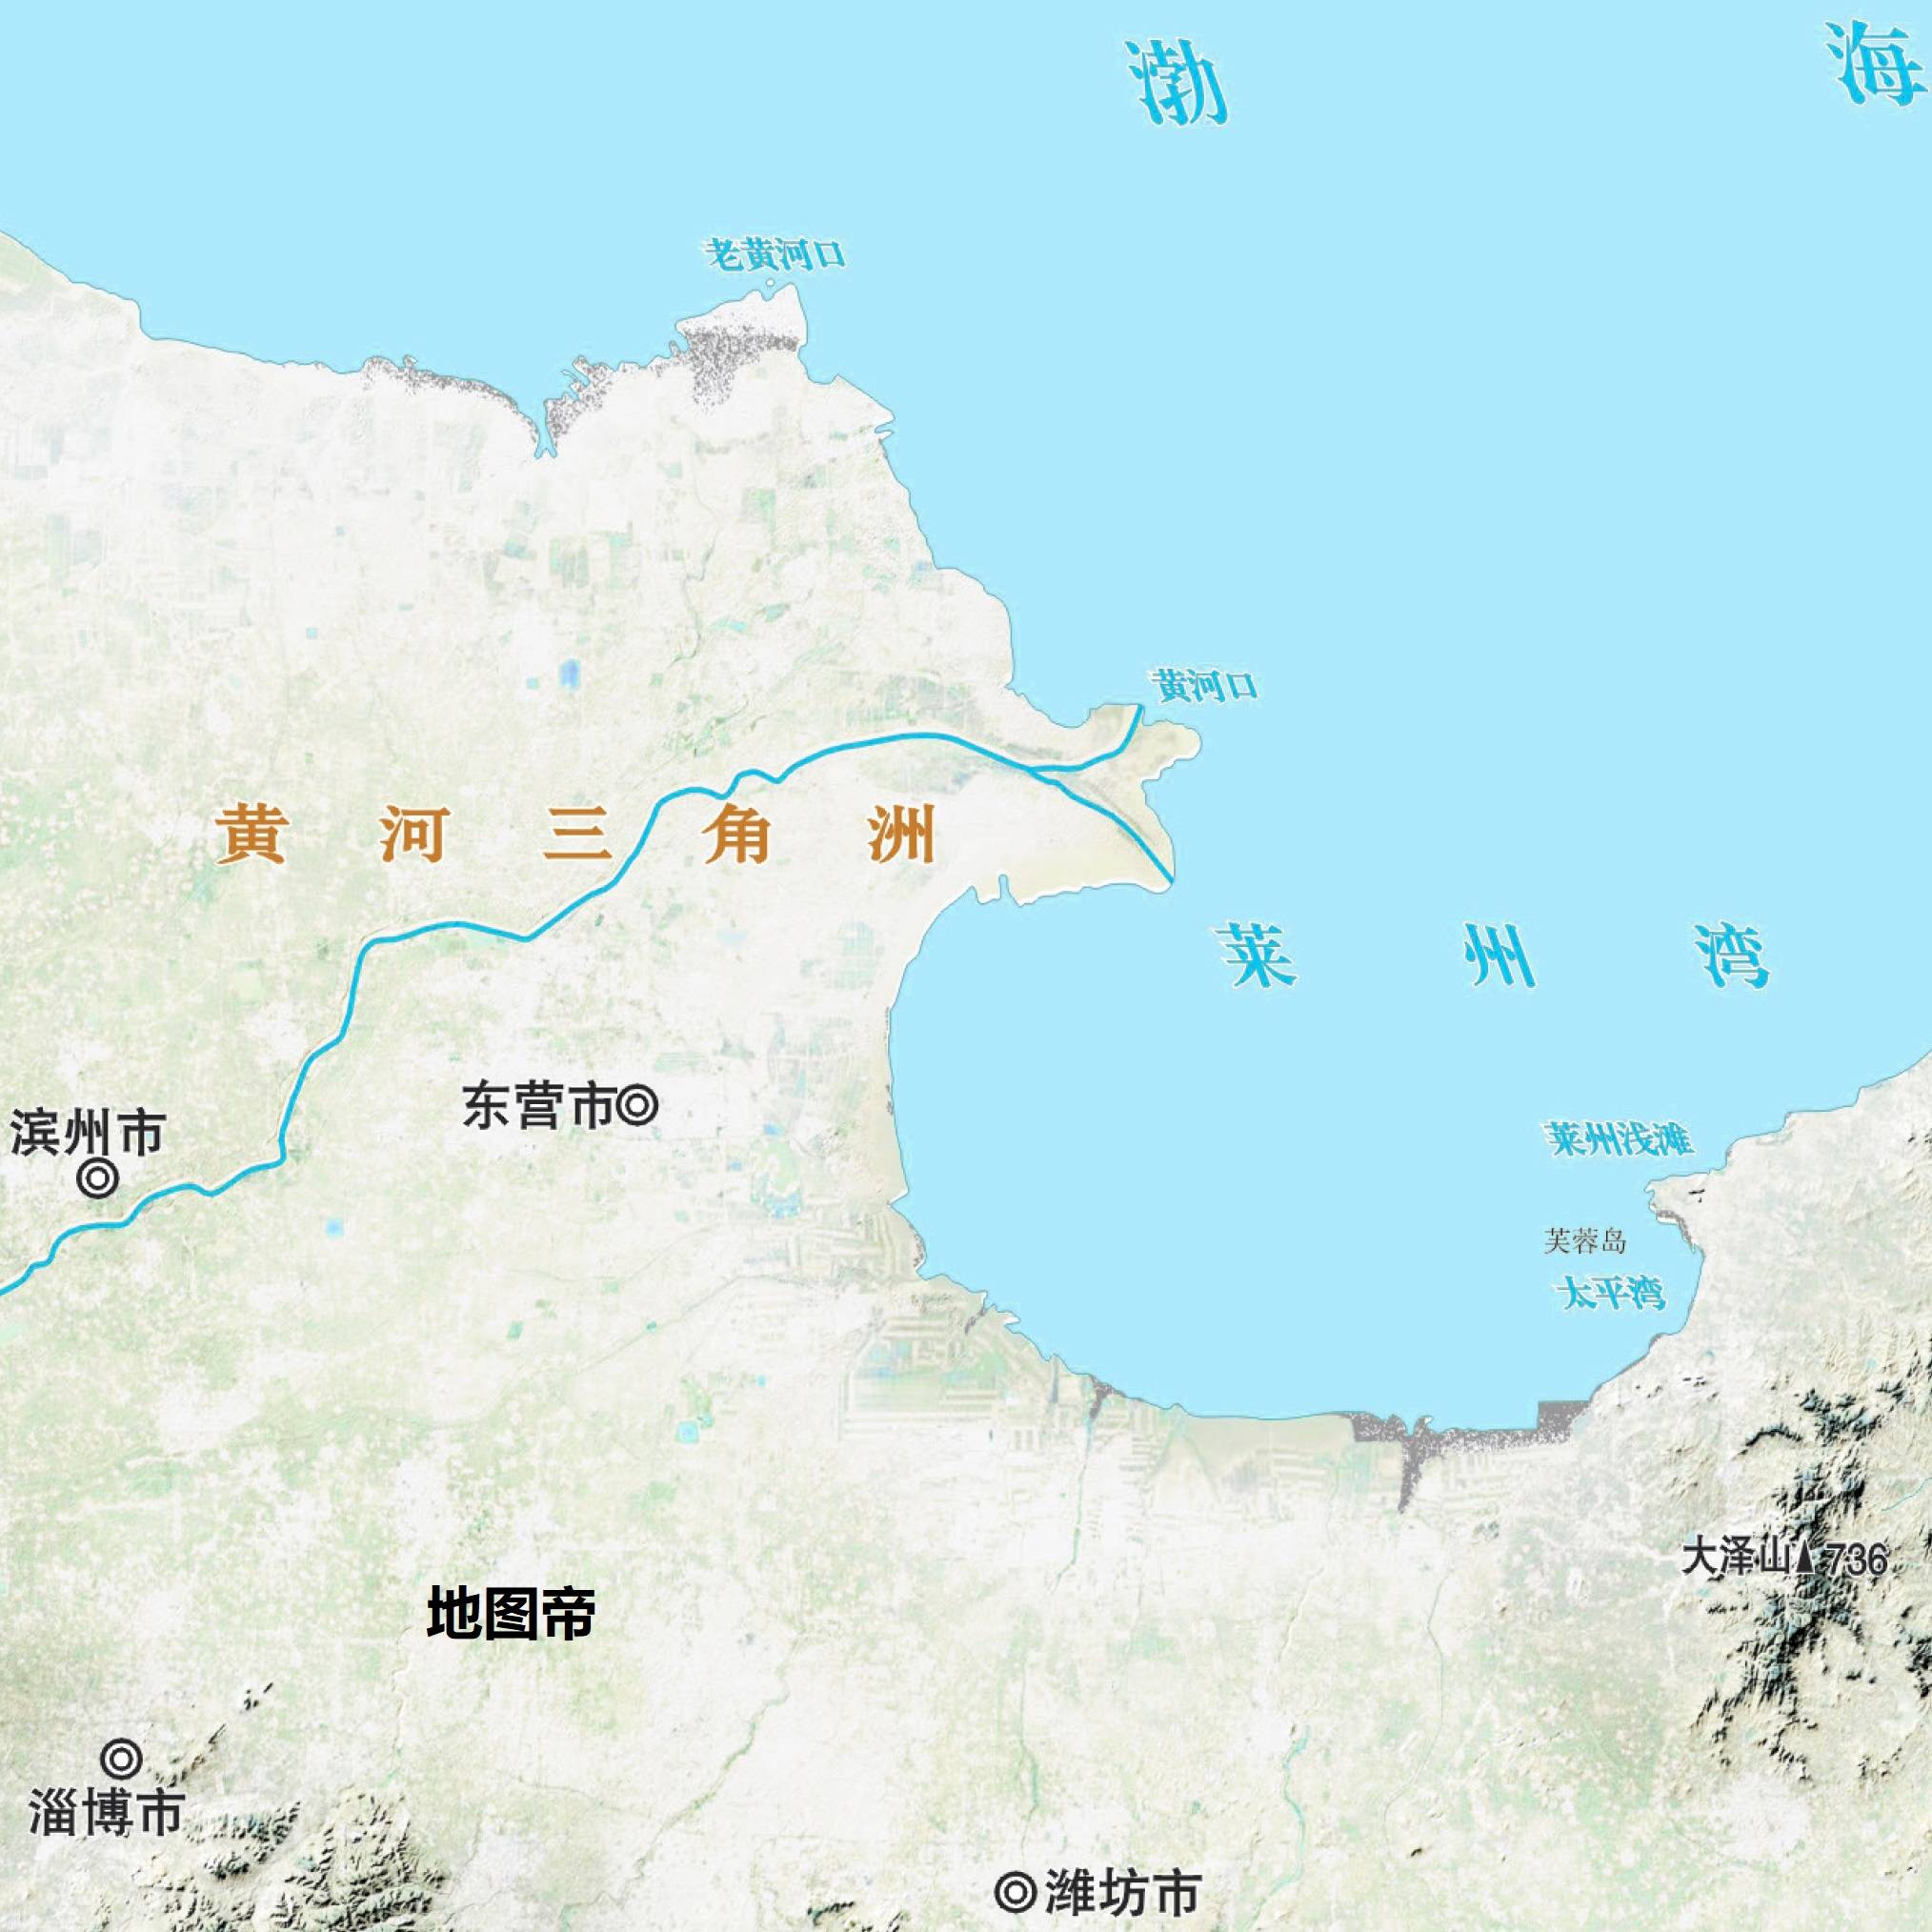 原创东营每年增加30平方千米,黄河会填平渤海吗?